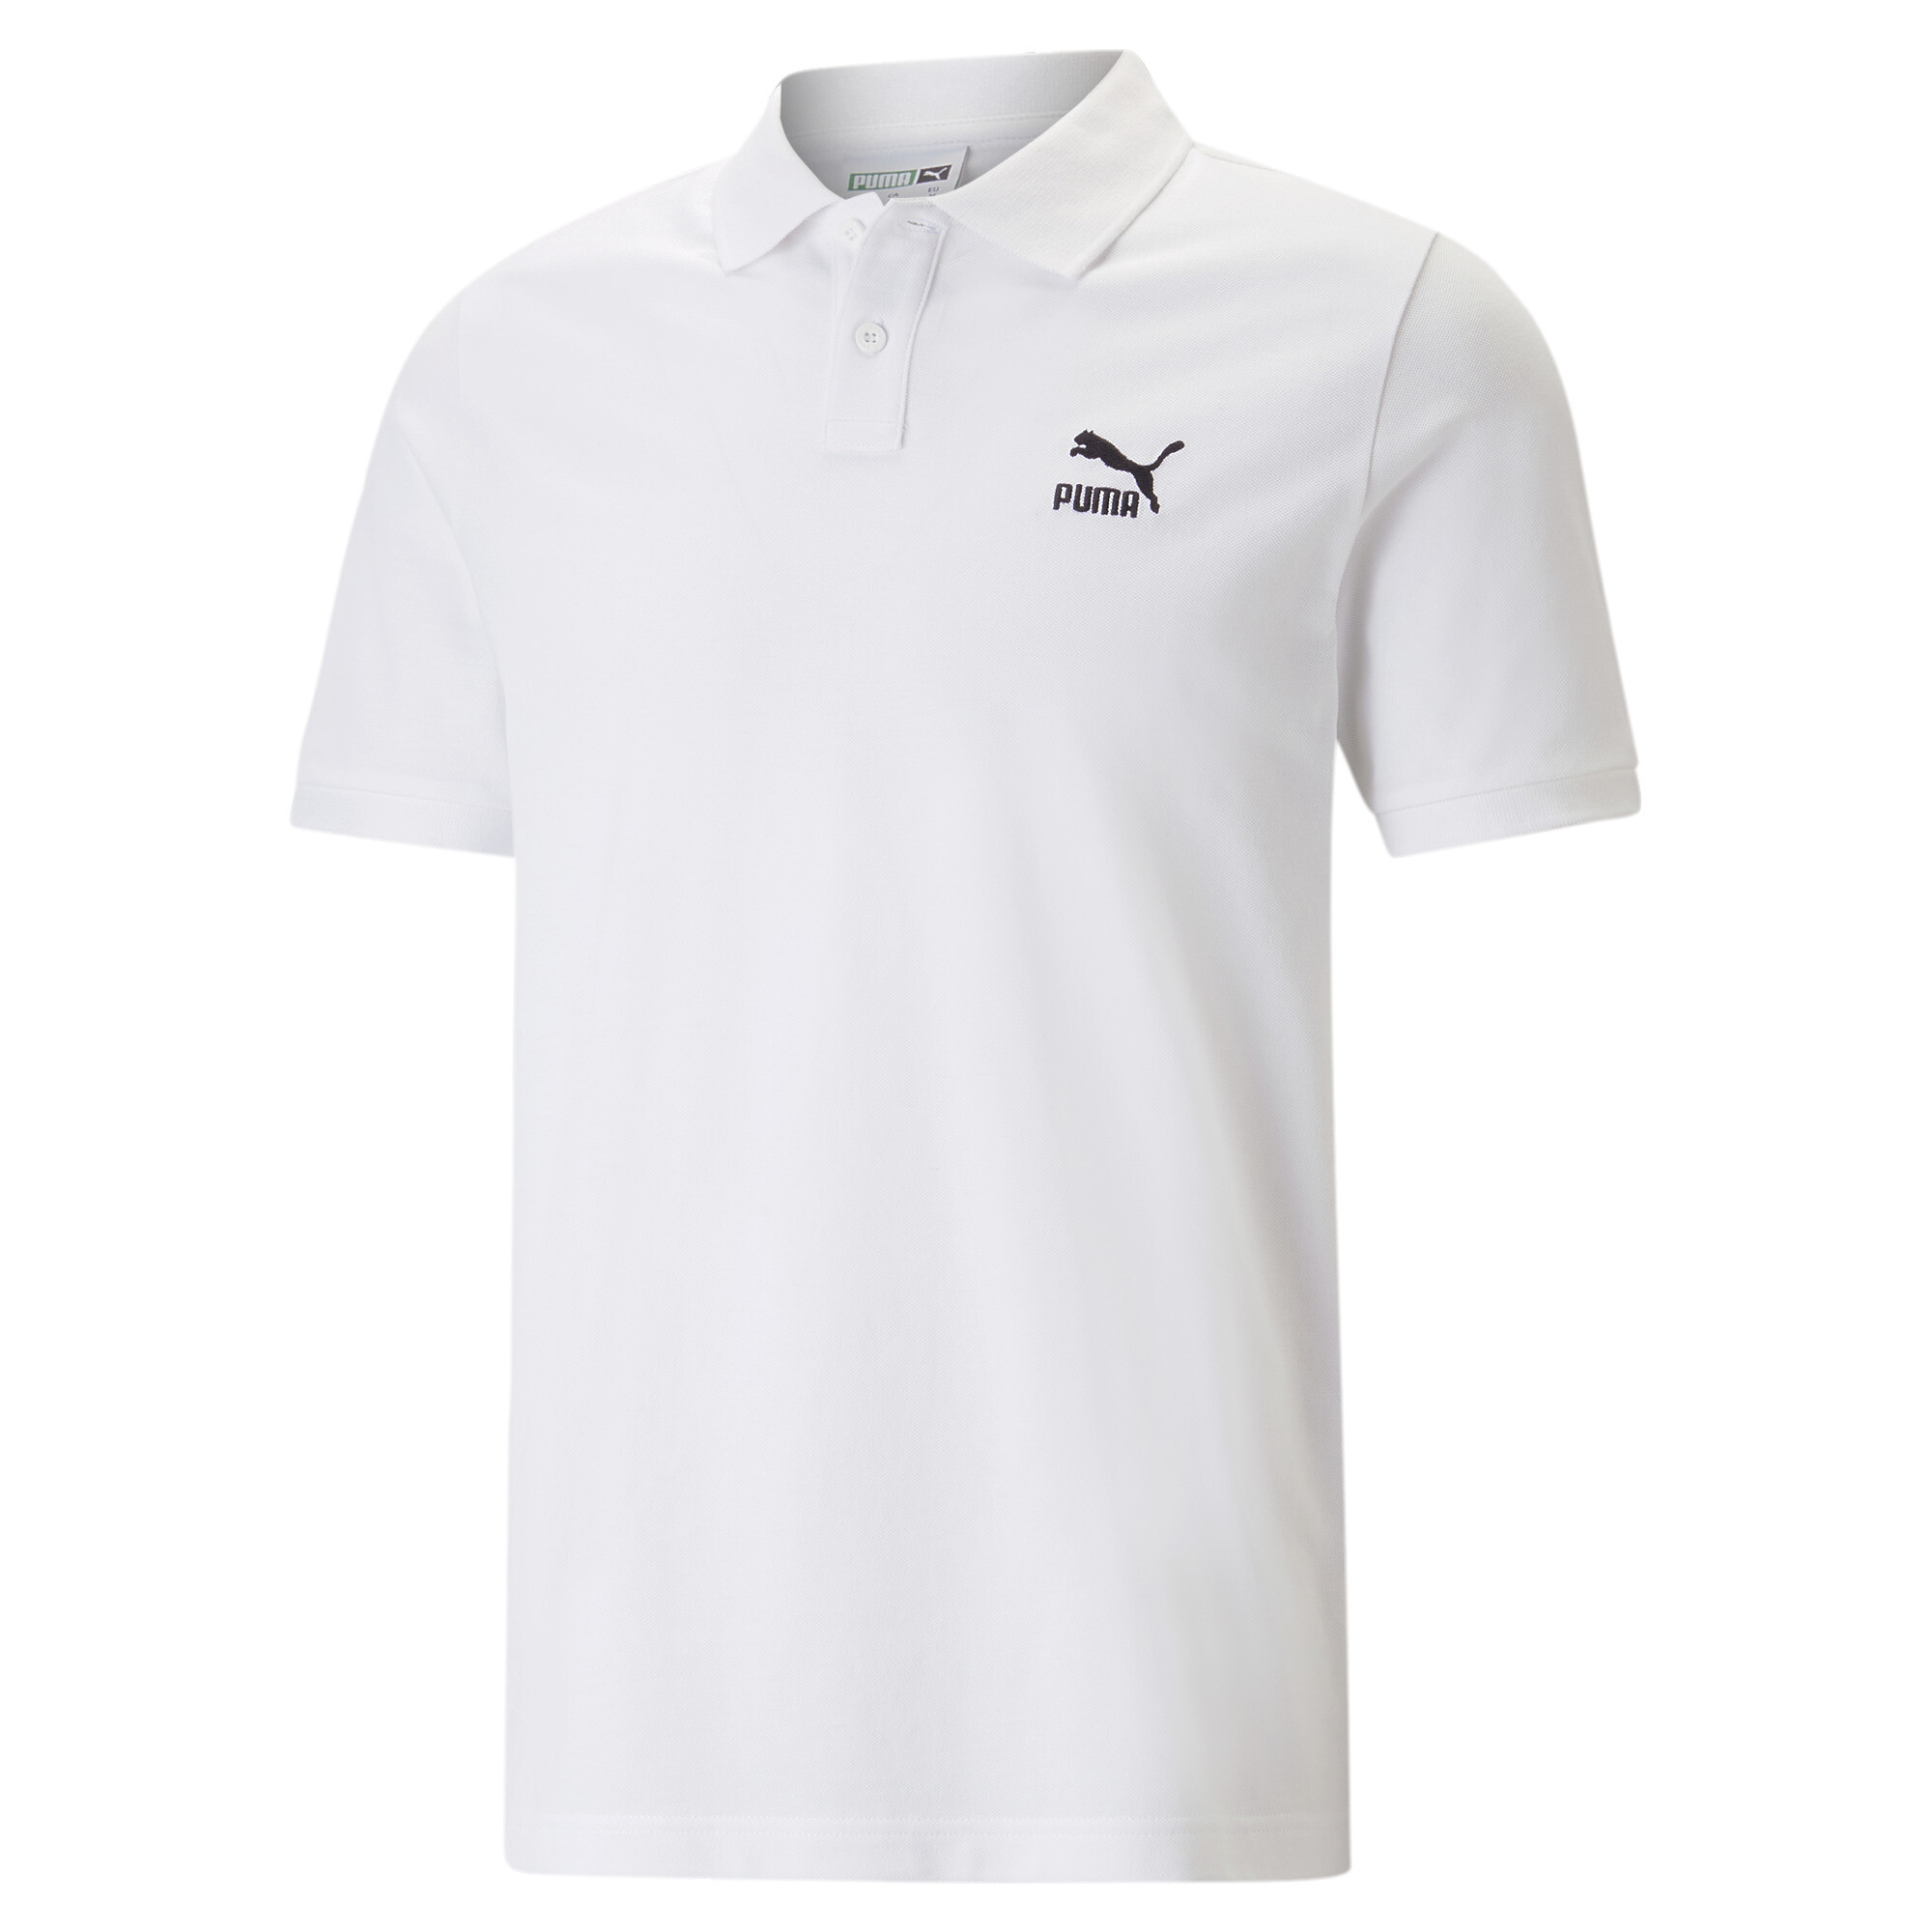 Men's PUMA Classics Polo Shirt Men In 20 - White, Size Small